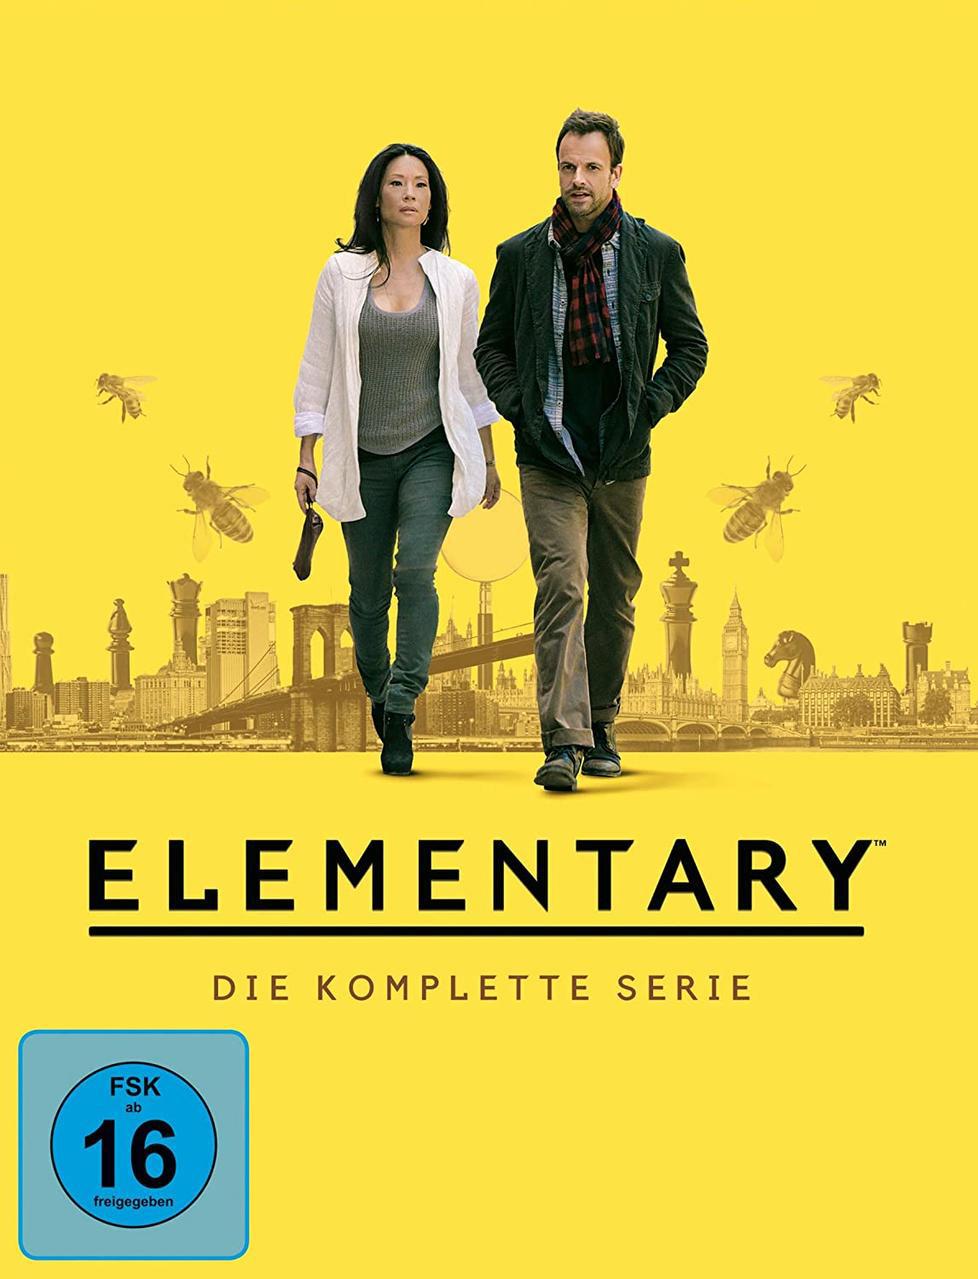 Die - komplette Serie DVD Elementary